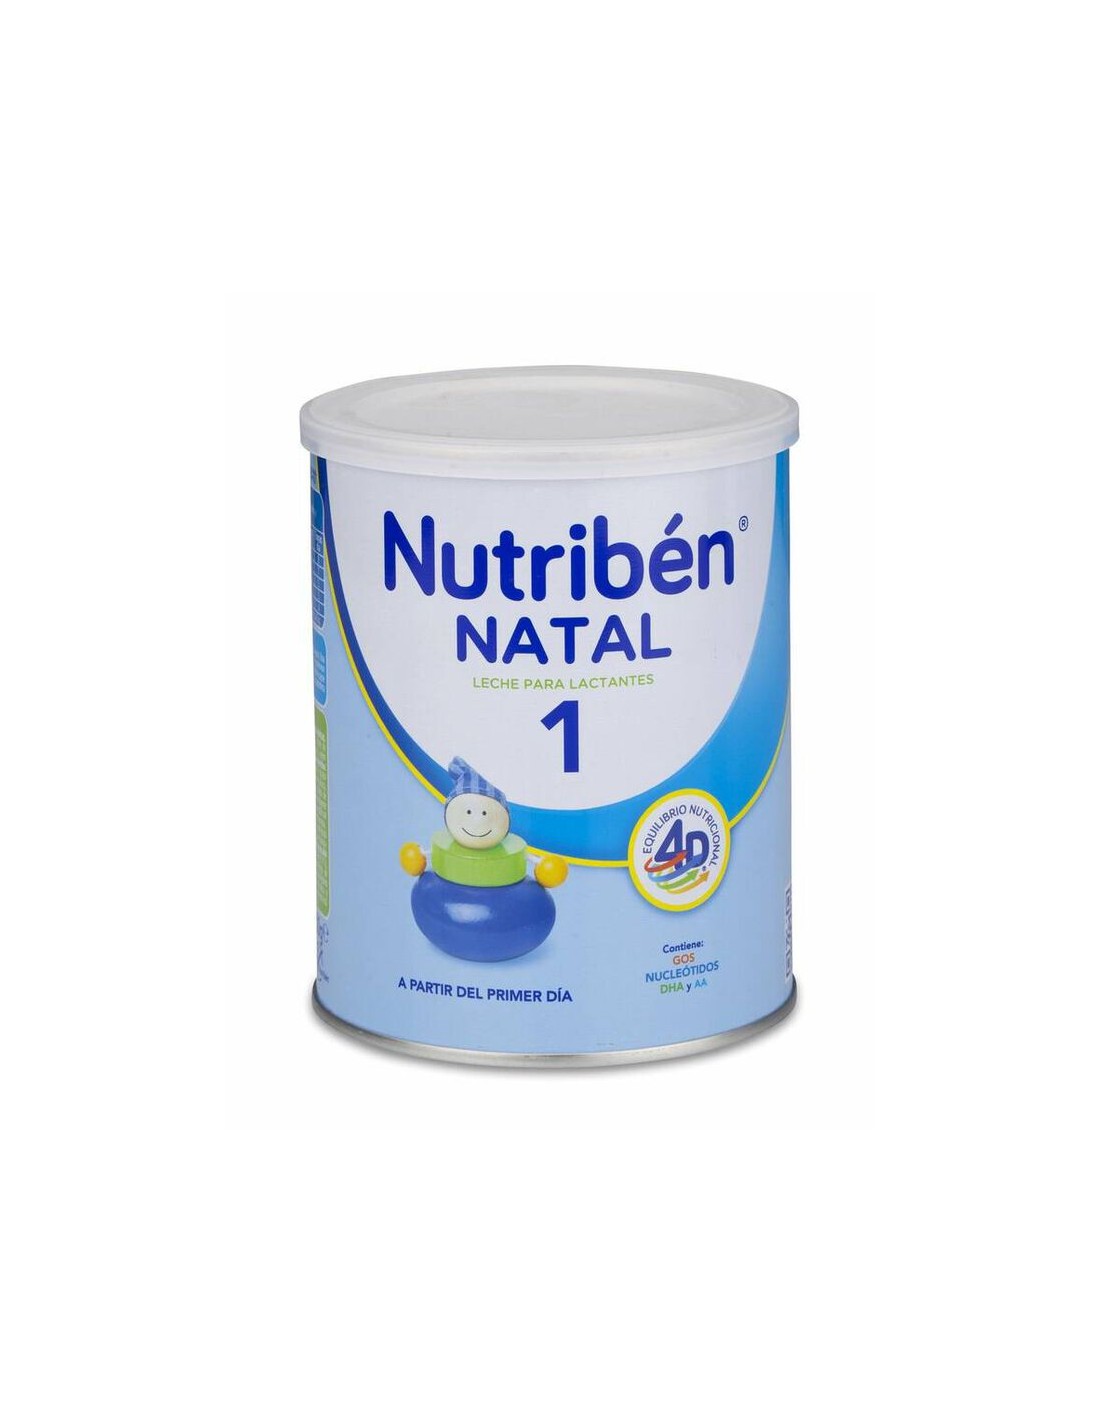 Nutribén Natal Pro Alfa 1 - Leche en Polvo Bebé 1